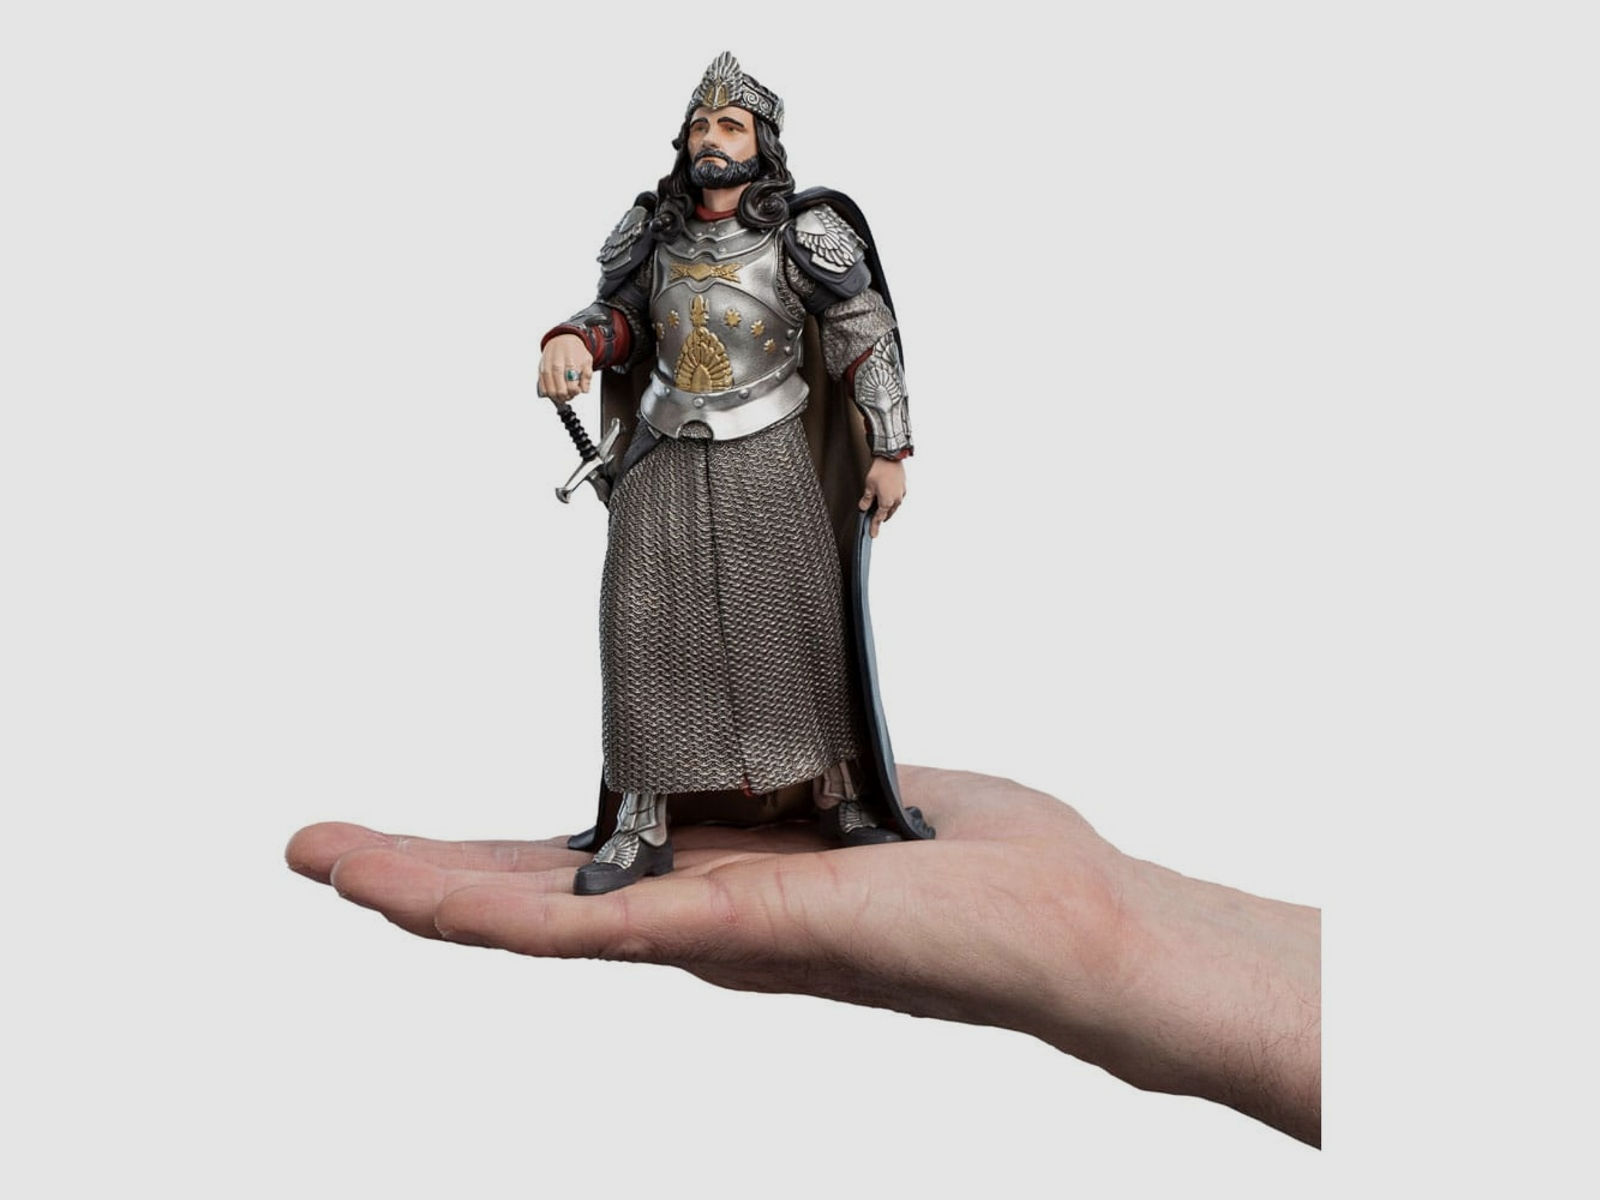 Herr der Ringe Mini Epics Vinyl Figur King Aragorn 19 cm | 42832